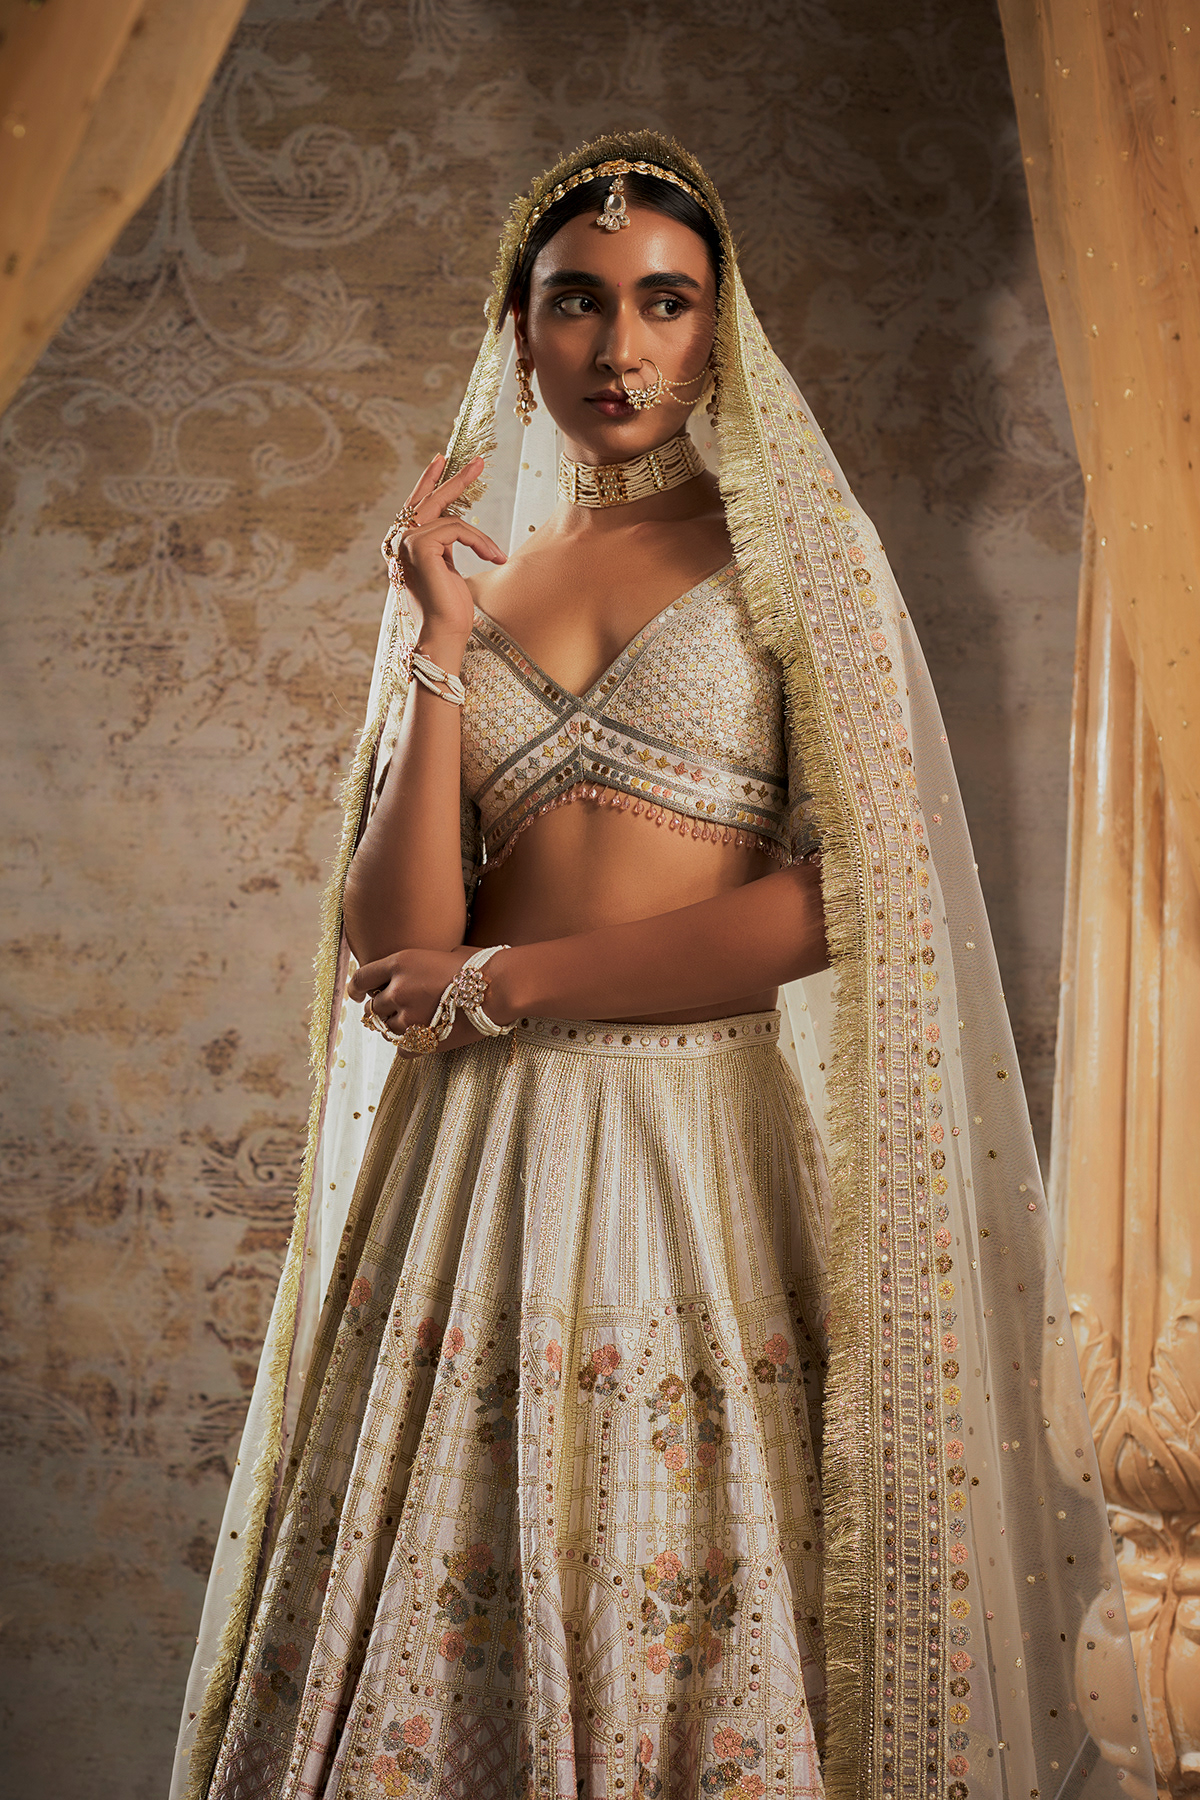 styling  India MUMBAI Style editorial campaign Photography  Indianfashion FalguniShanePeacock Fashionstyling